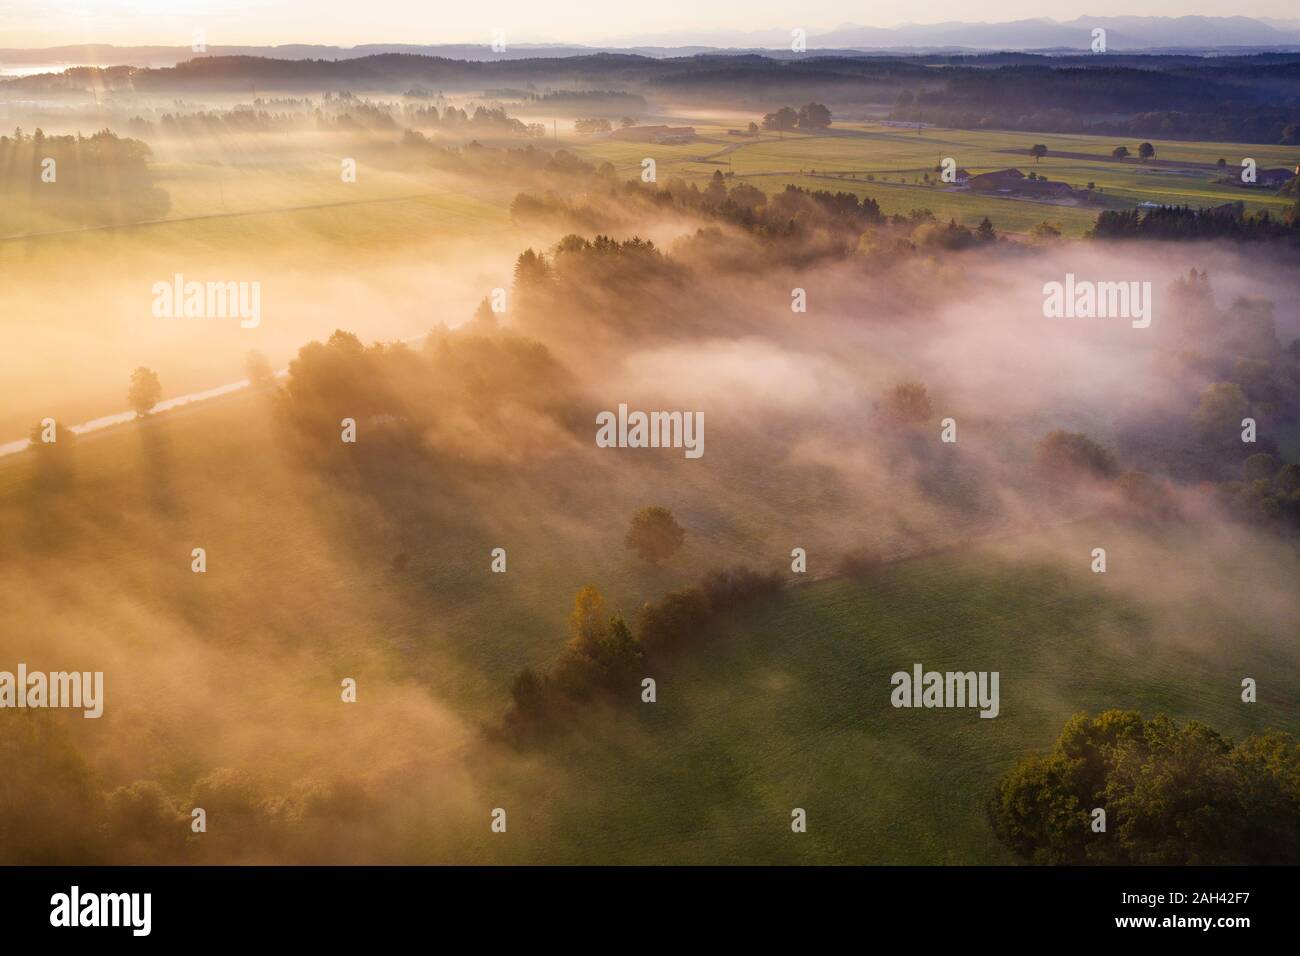 Allemagne, Bavière, Geretsried, vue aérienne de campagne enveloppée de brouillard au lever du soleil Banque D'Images